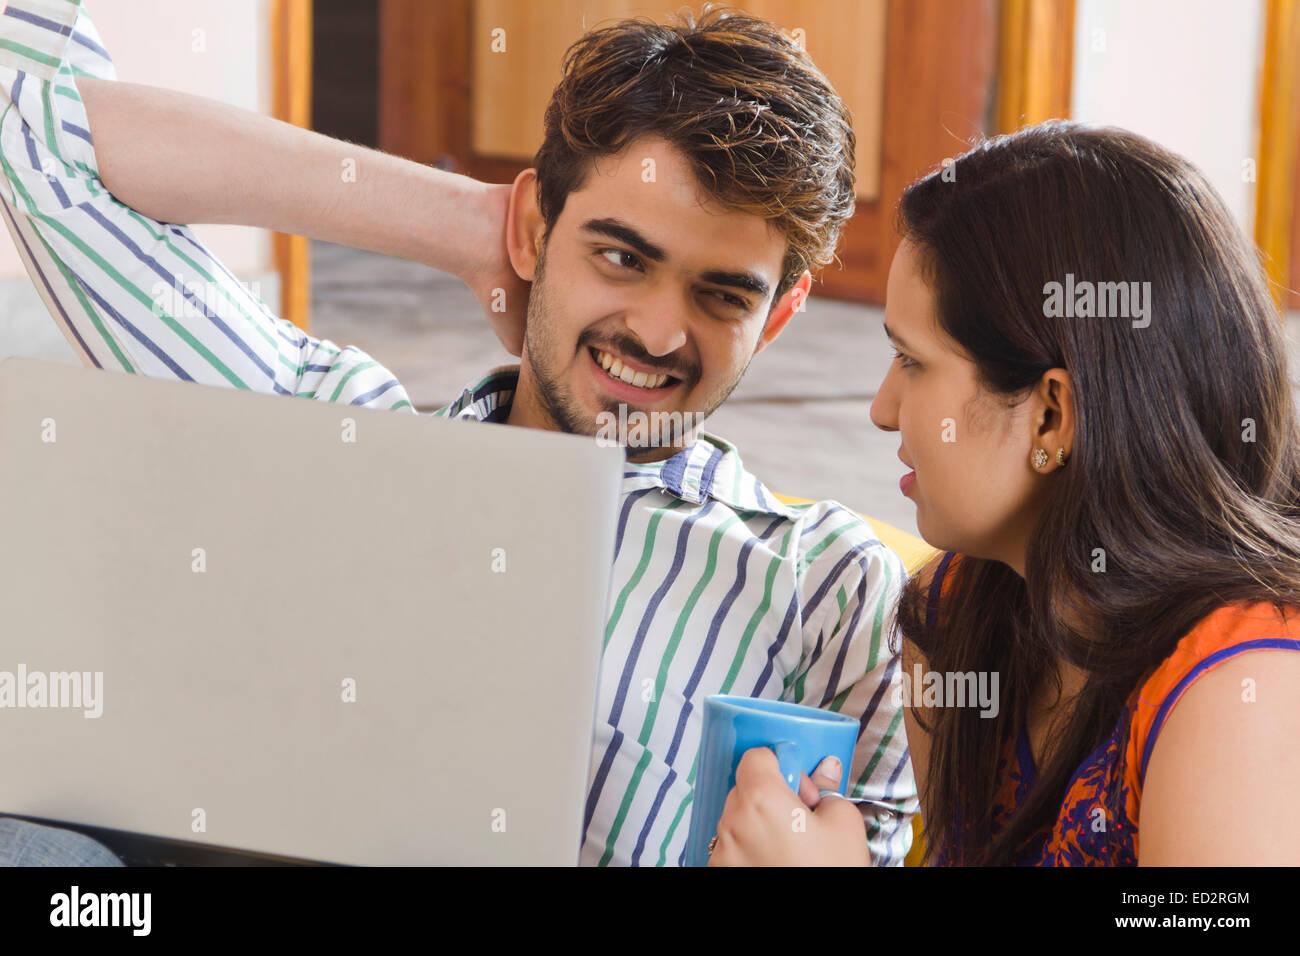 2 couple marié indien accueil séance de travail pour ordinateur portable Banque D'Images